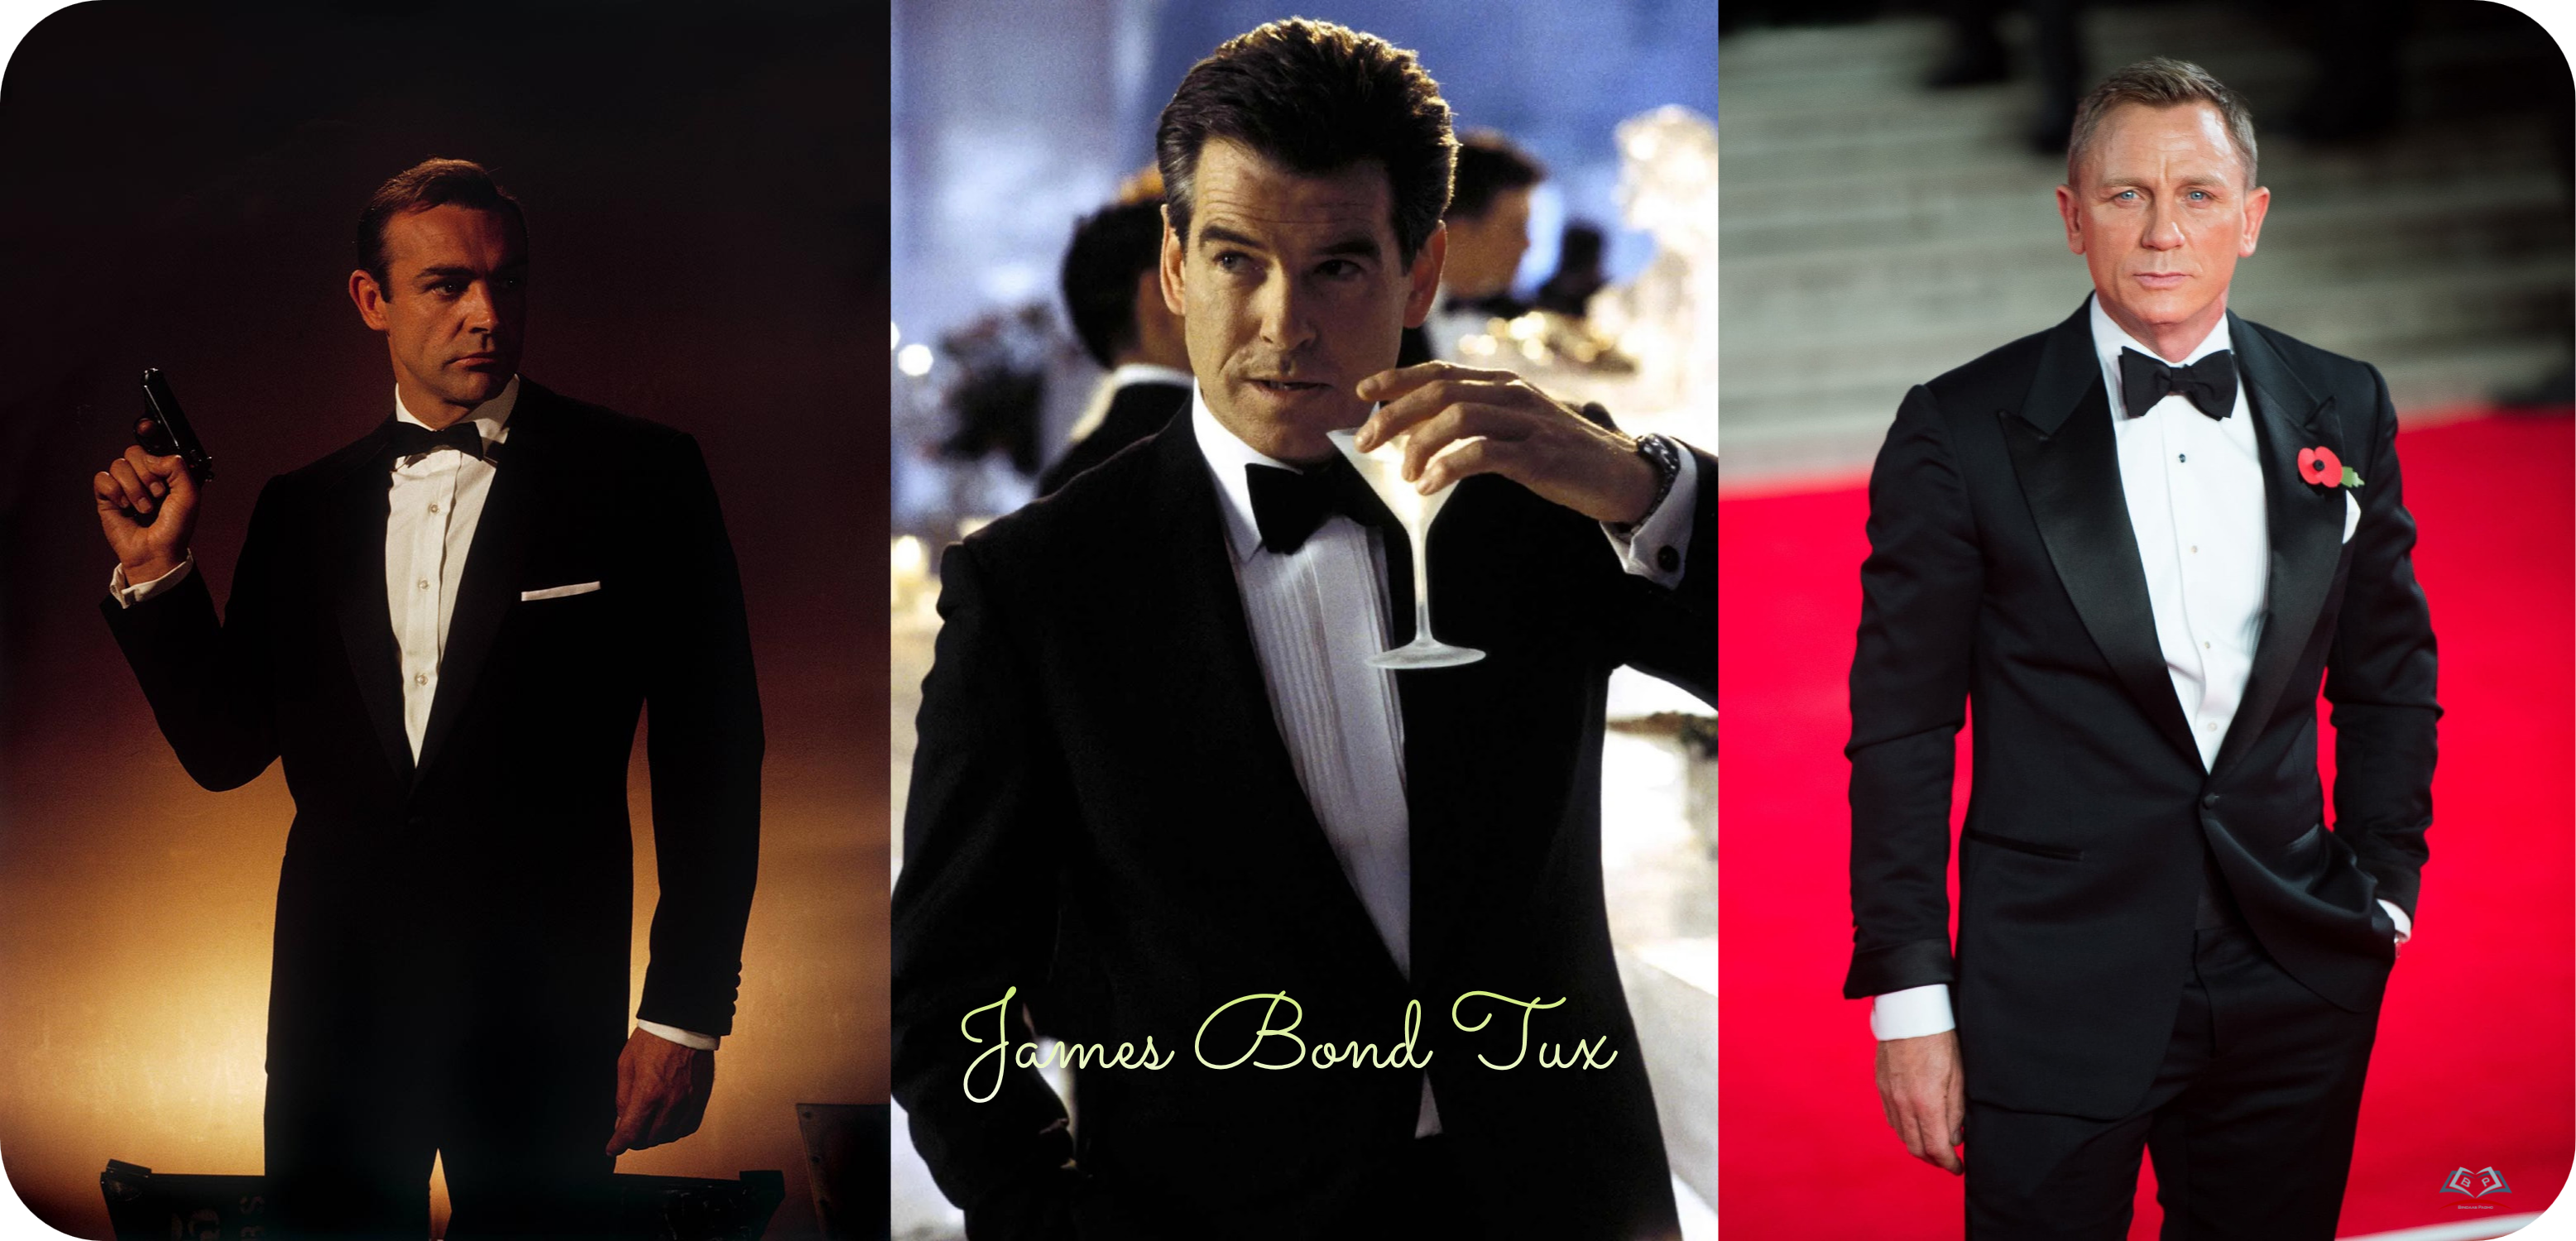 James Bond Tux